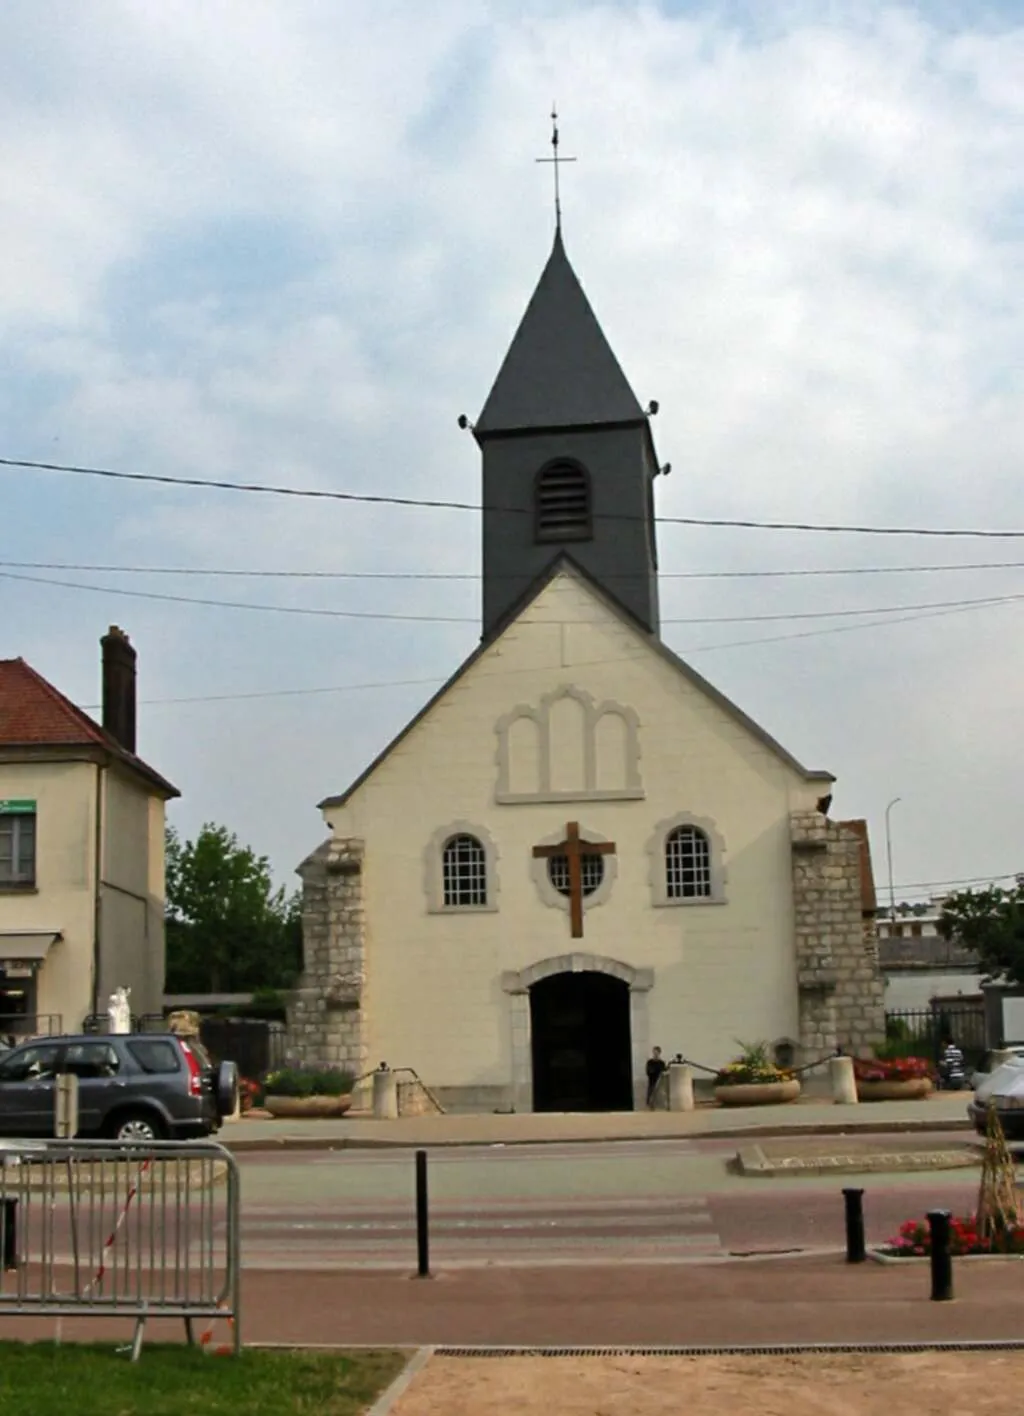 Image de Bonnières-sur-Seine